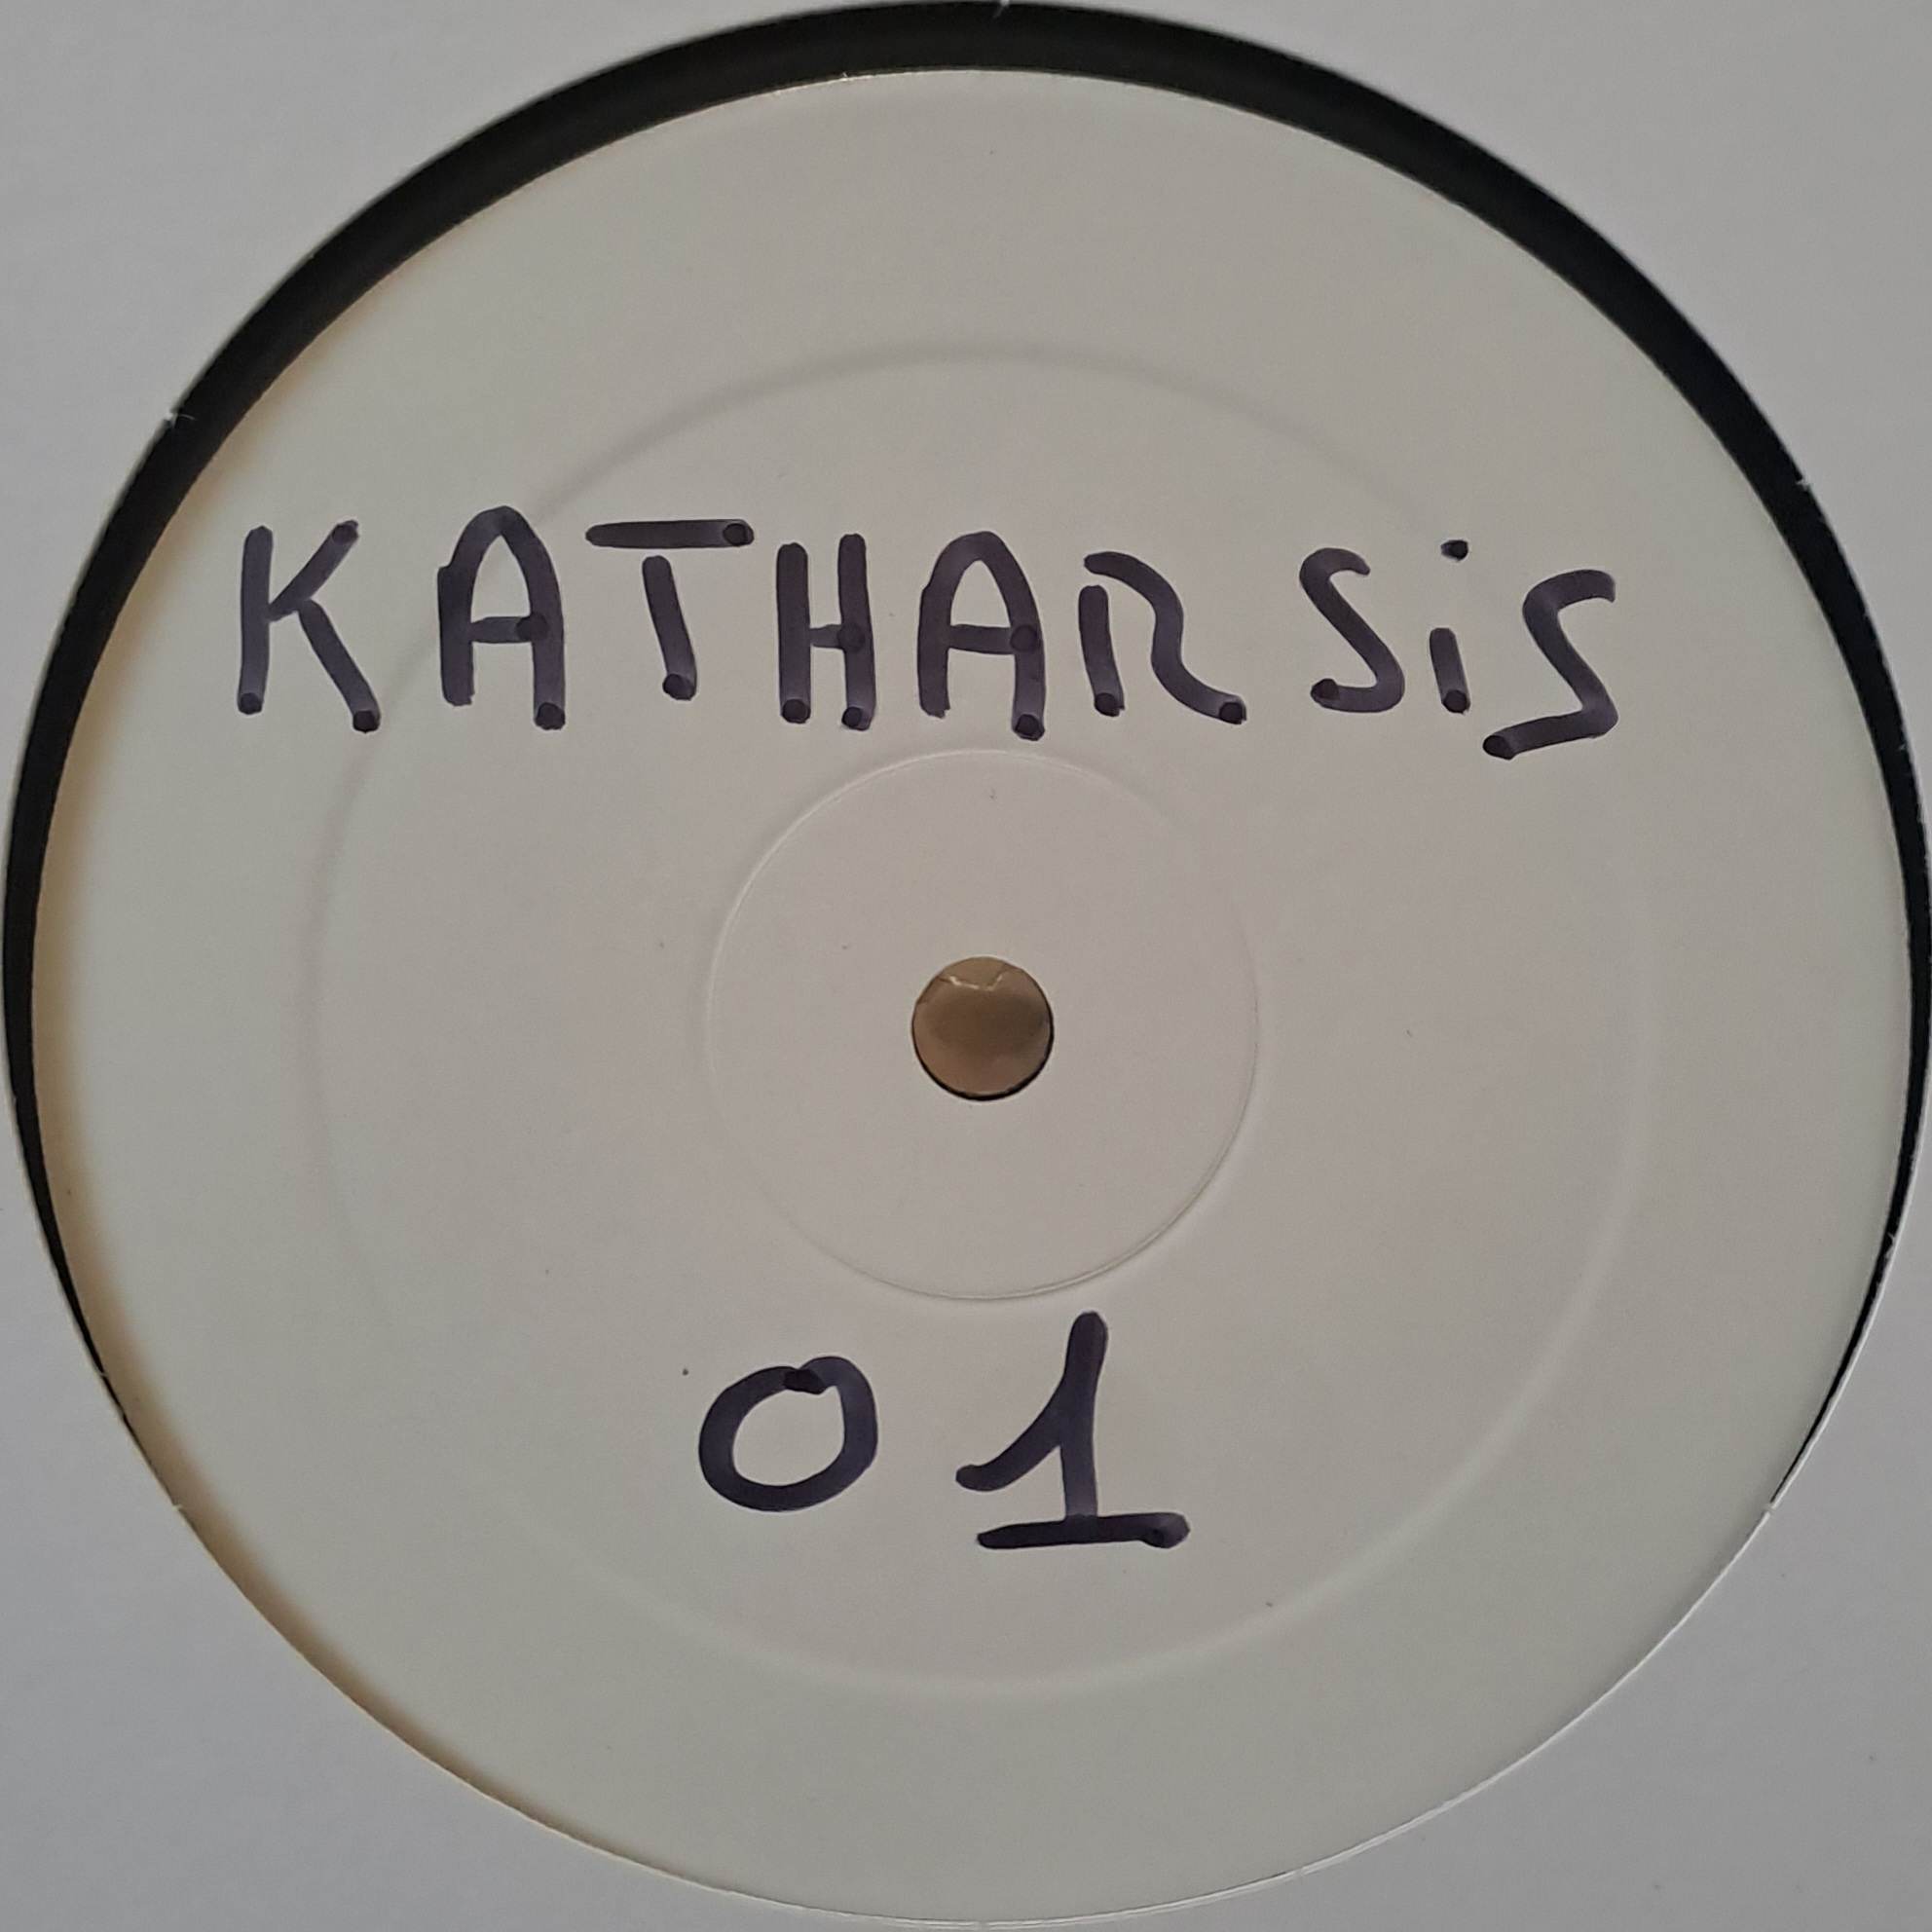 Katharsis 01 (white label) - vinyle freetekno